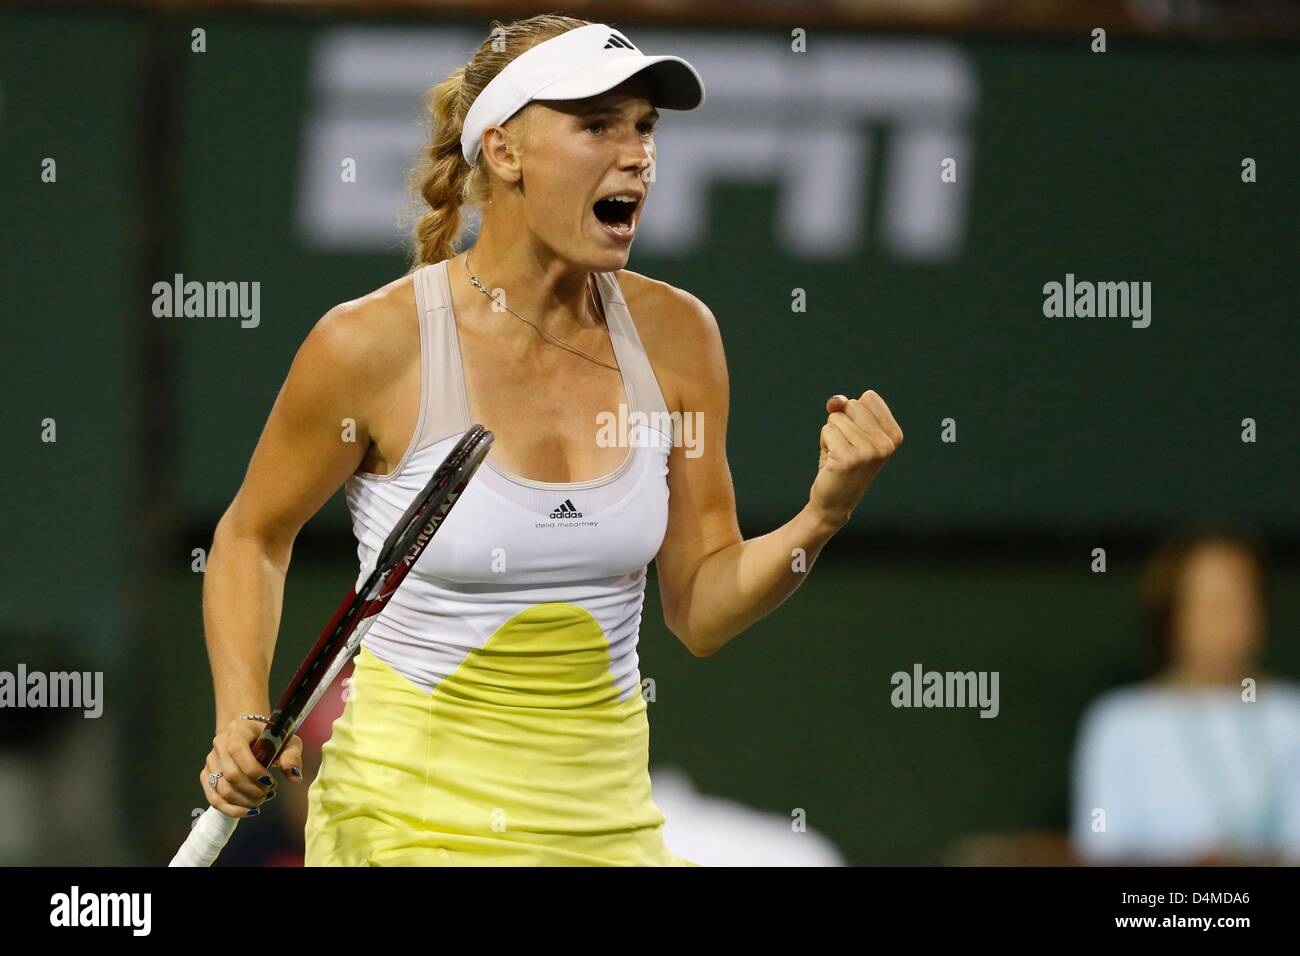 15 mars 2013 : Caroline Wozniacki de Danemark réagit à gagner un point contre Angelique Kerber de l'Allemagne au cours de la BNP Paribas Open à Indian Wells Tennis Garden à Indian Wells, Californie Banque D'Images